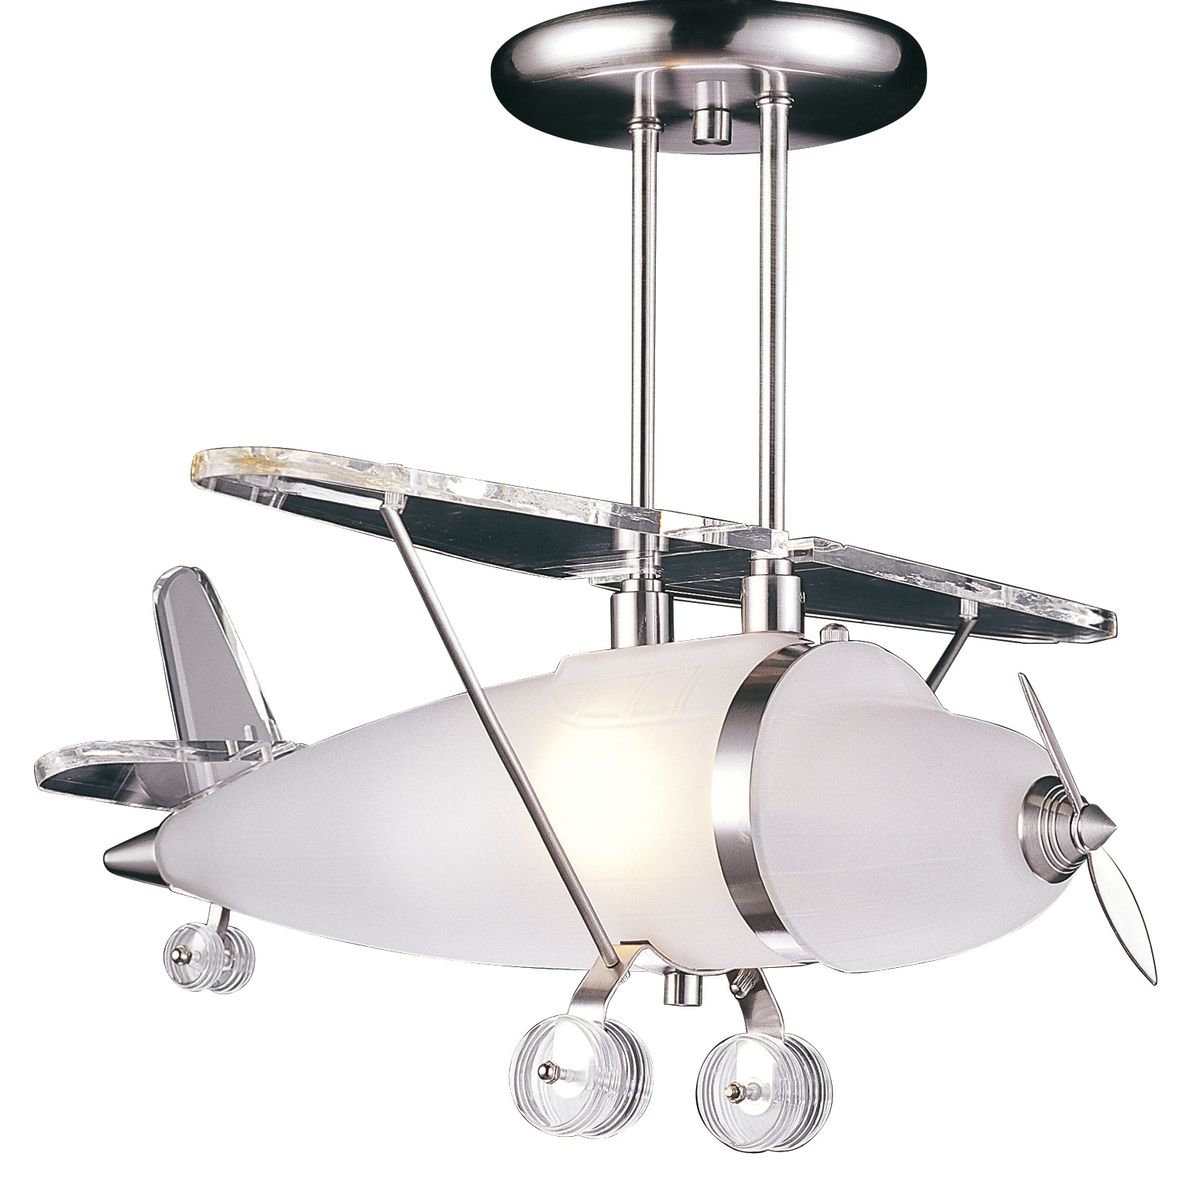 Prop Plane Light Fixture Lamps Plus (Lamps Plus / The Spokesman-Review)